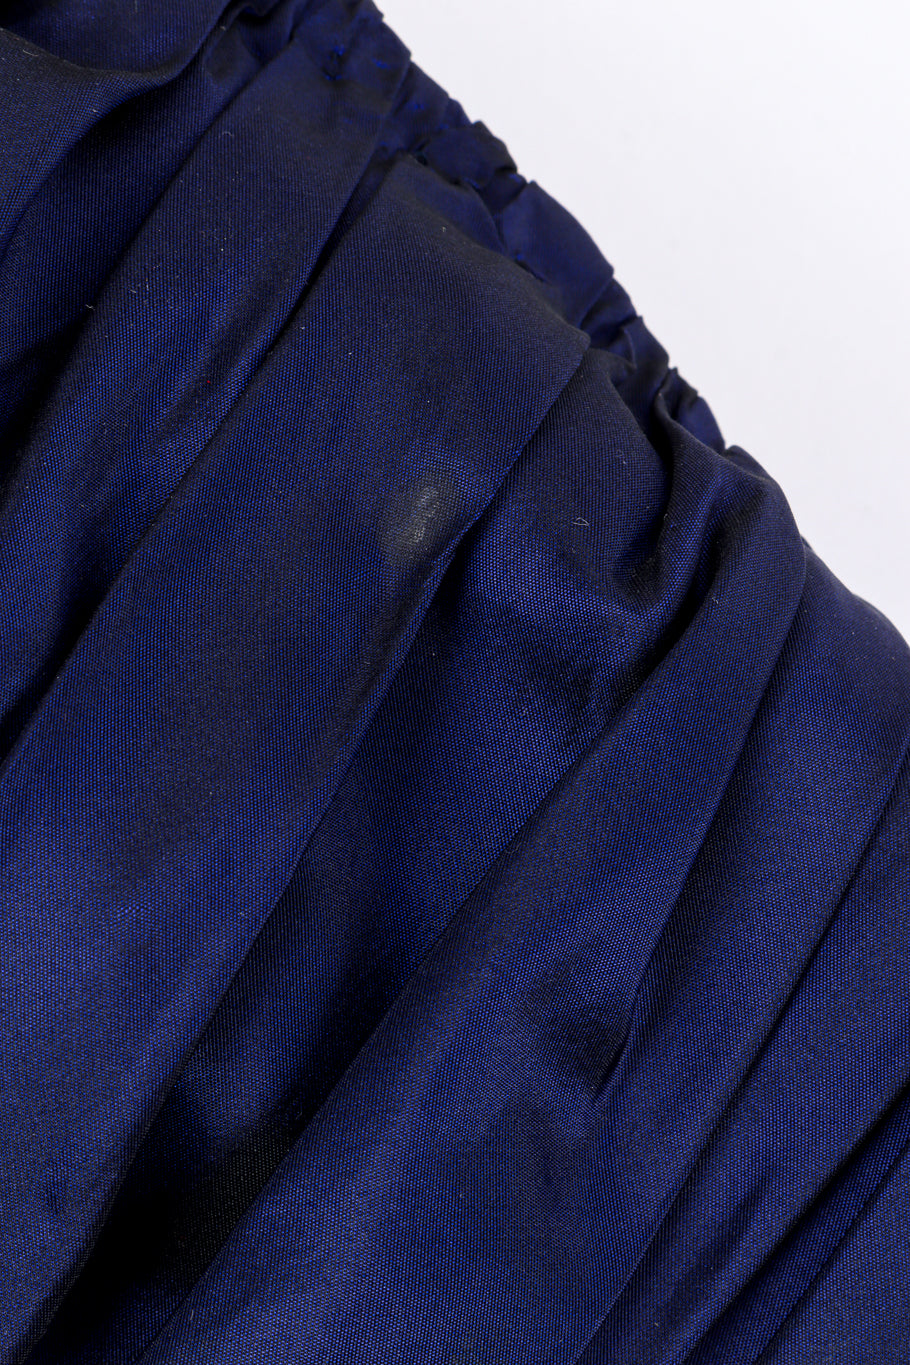 Vintage Jacqueline de Ribes Taffeta Wrap Dress stain at left side @recessla